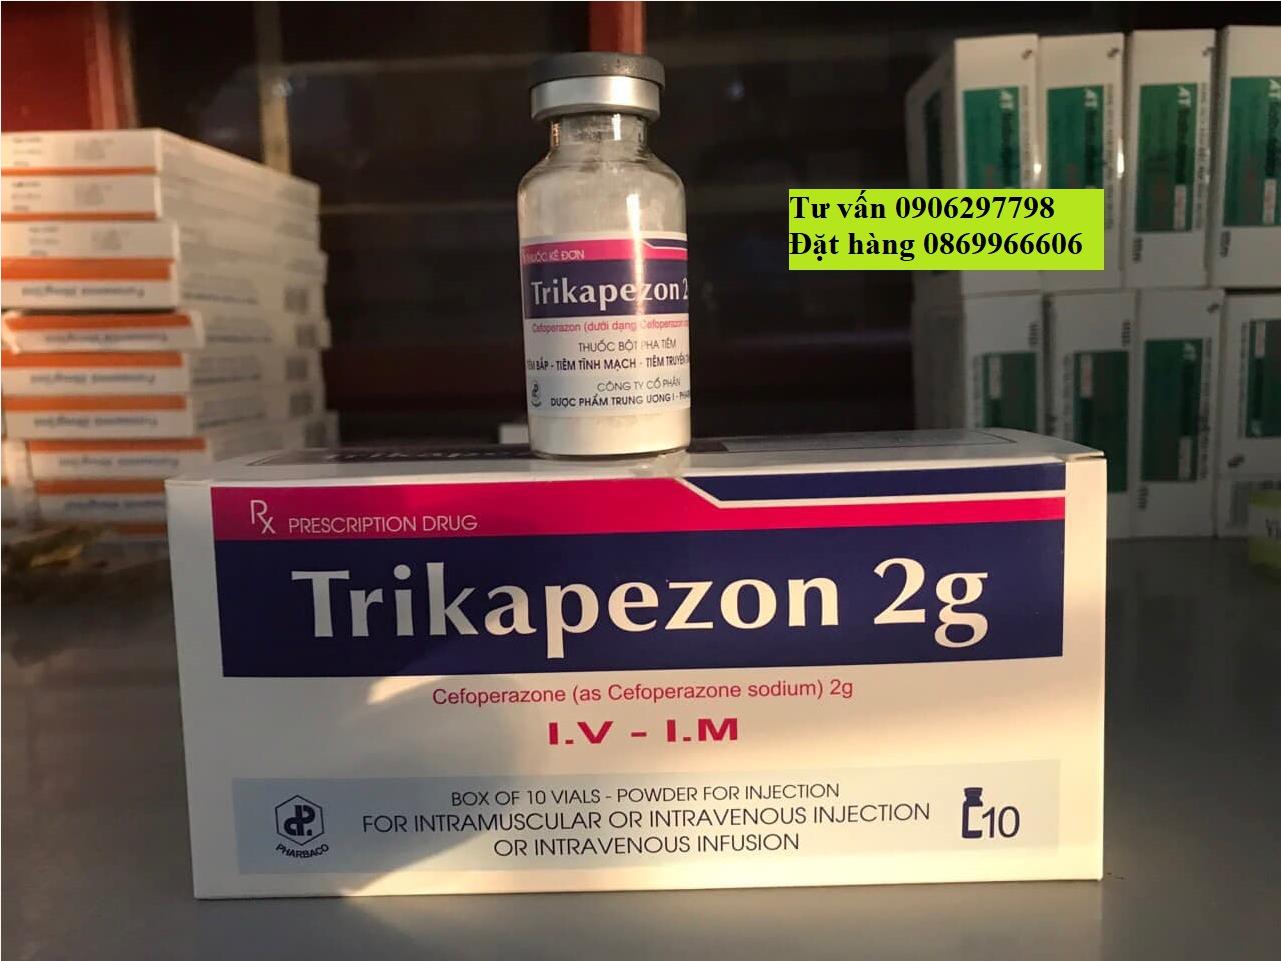  Thuốc Trikapezon 2g Cefoperazone giá bao nhiêu mua ở đâu?